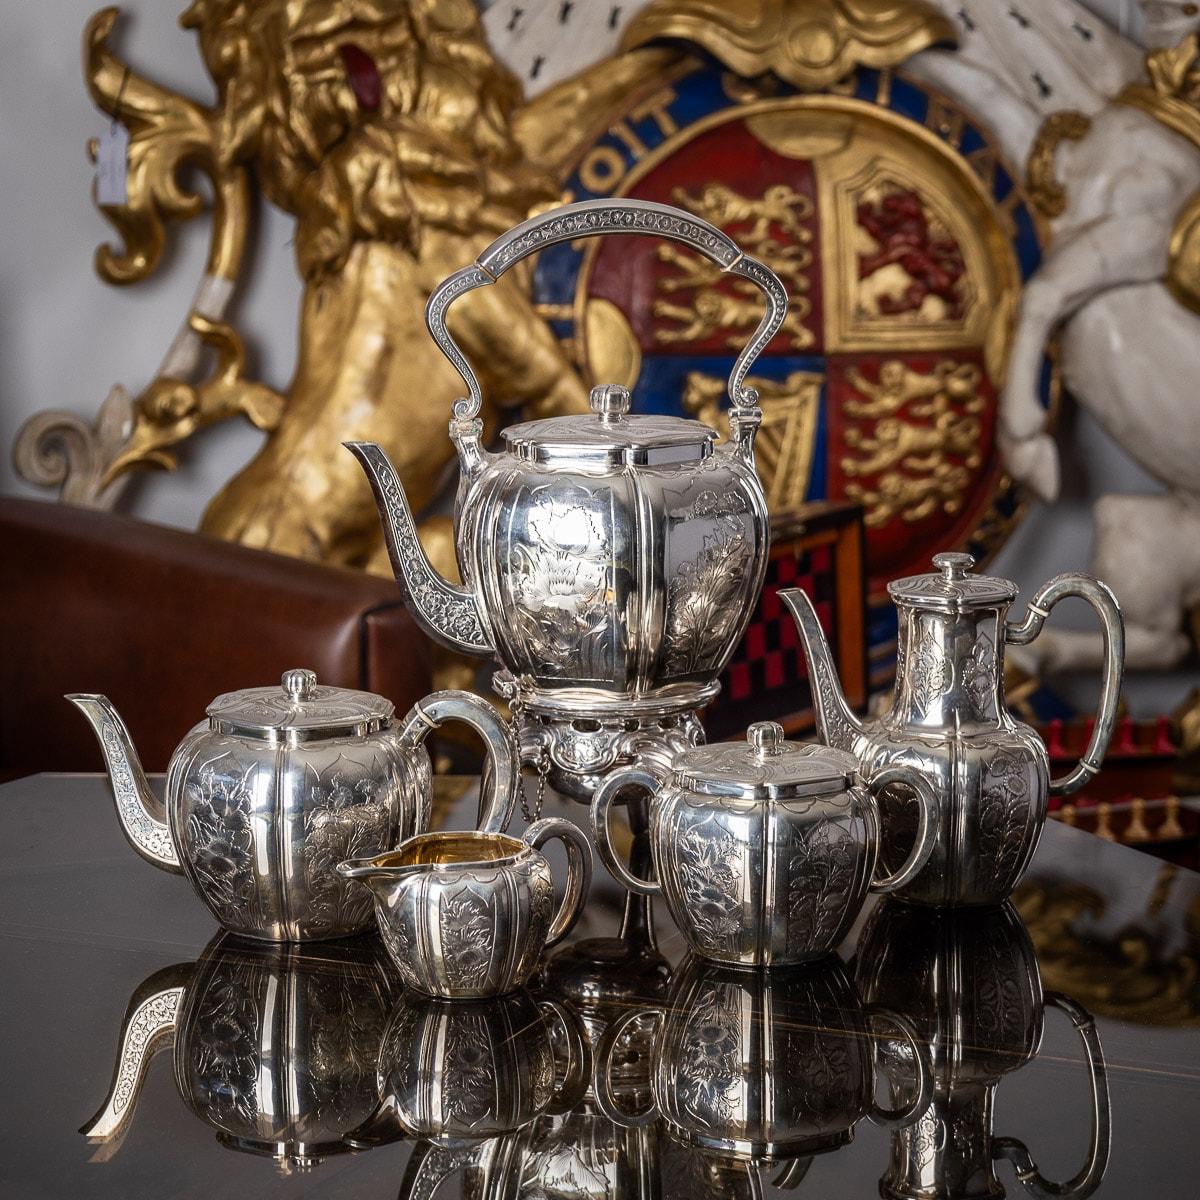 Service à thé d'exception français de la fin du 19e siècle, comprenant : une bouilloire en argent, une théière en argent, une cafetière en argent, un sucrier en argent et un crémier en argent, en forme de melon avec des panneaux ciselés de